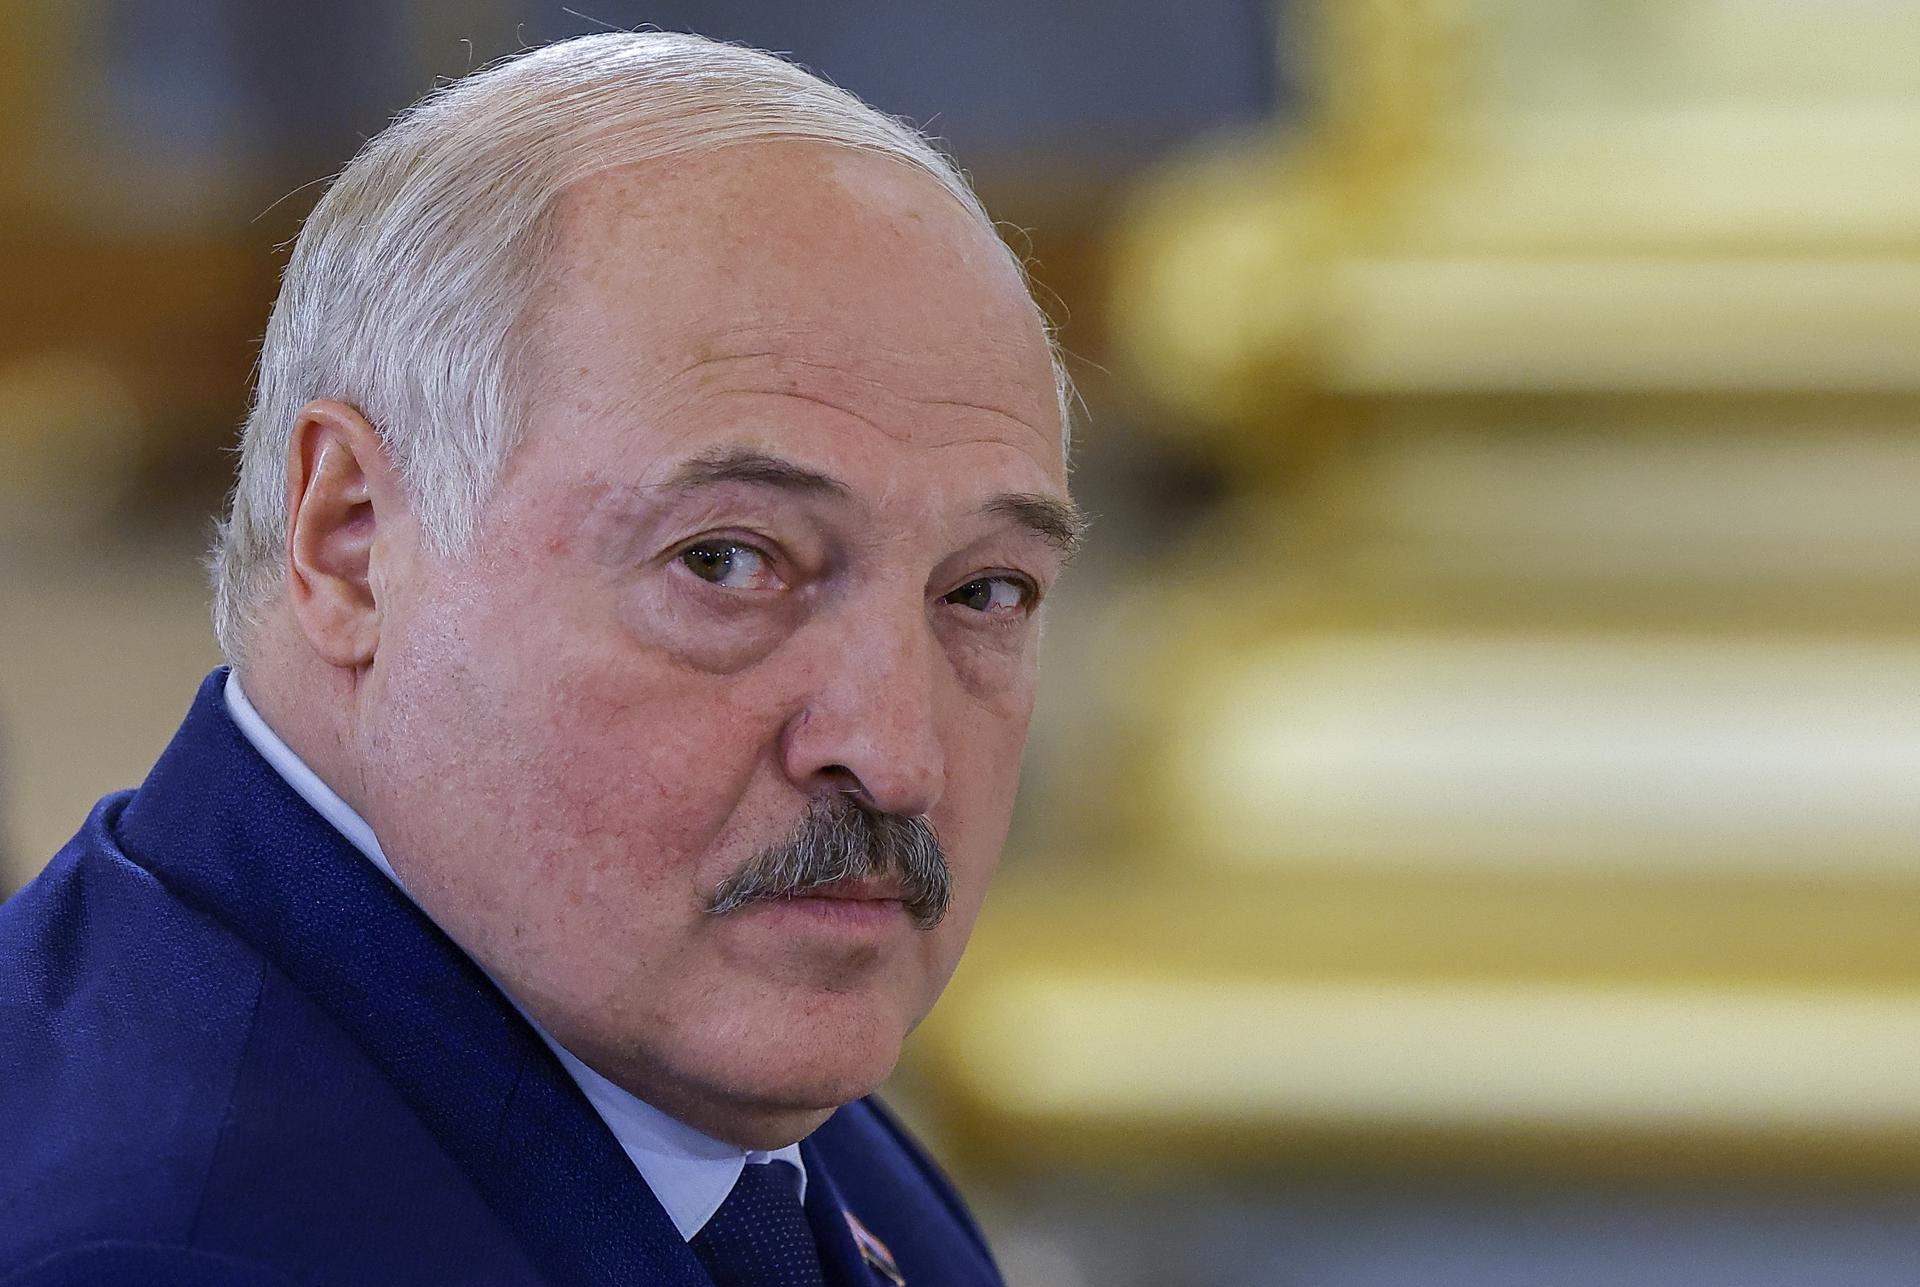 El presidente bielorruso, Alexander Lukashenko, en una imagen de archivo.EFE